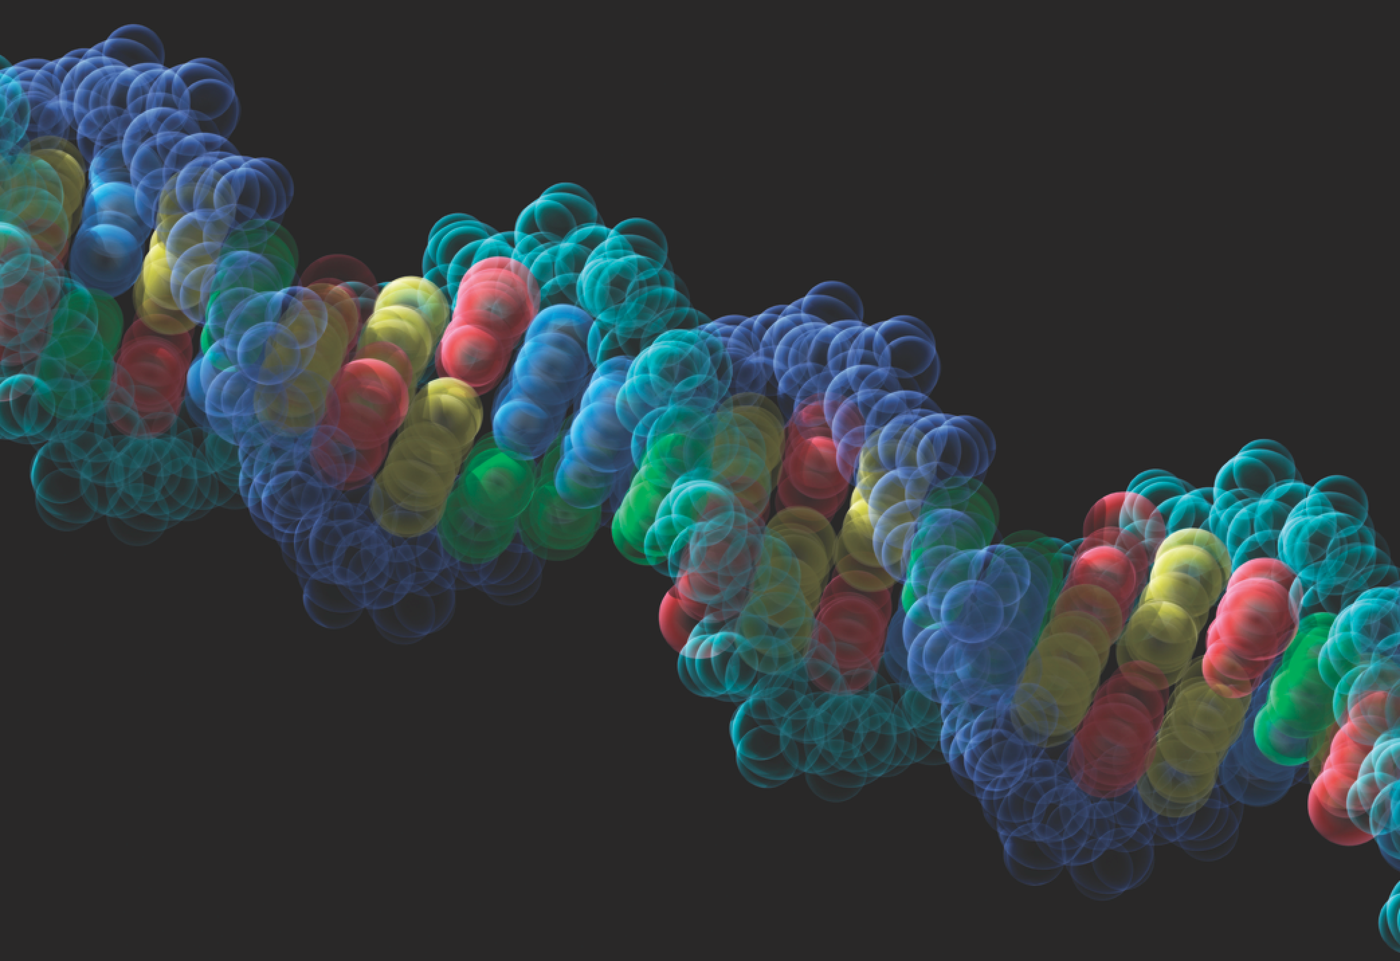 Створений комп'ютер на основі ДНК, який нарешті-то можна перепрограмувати